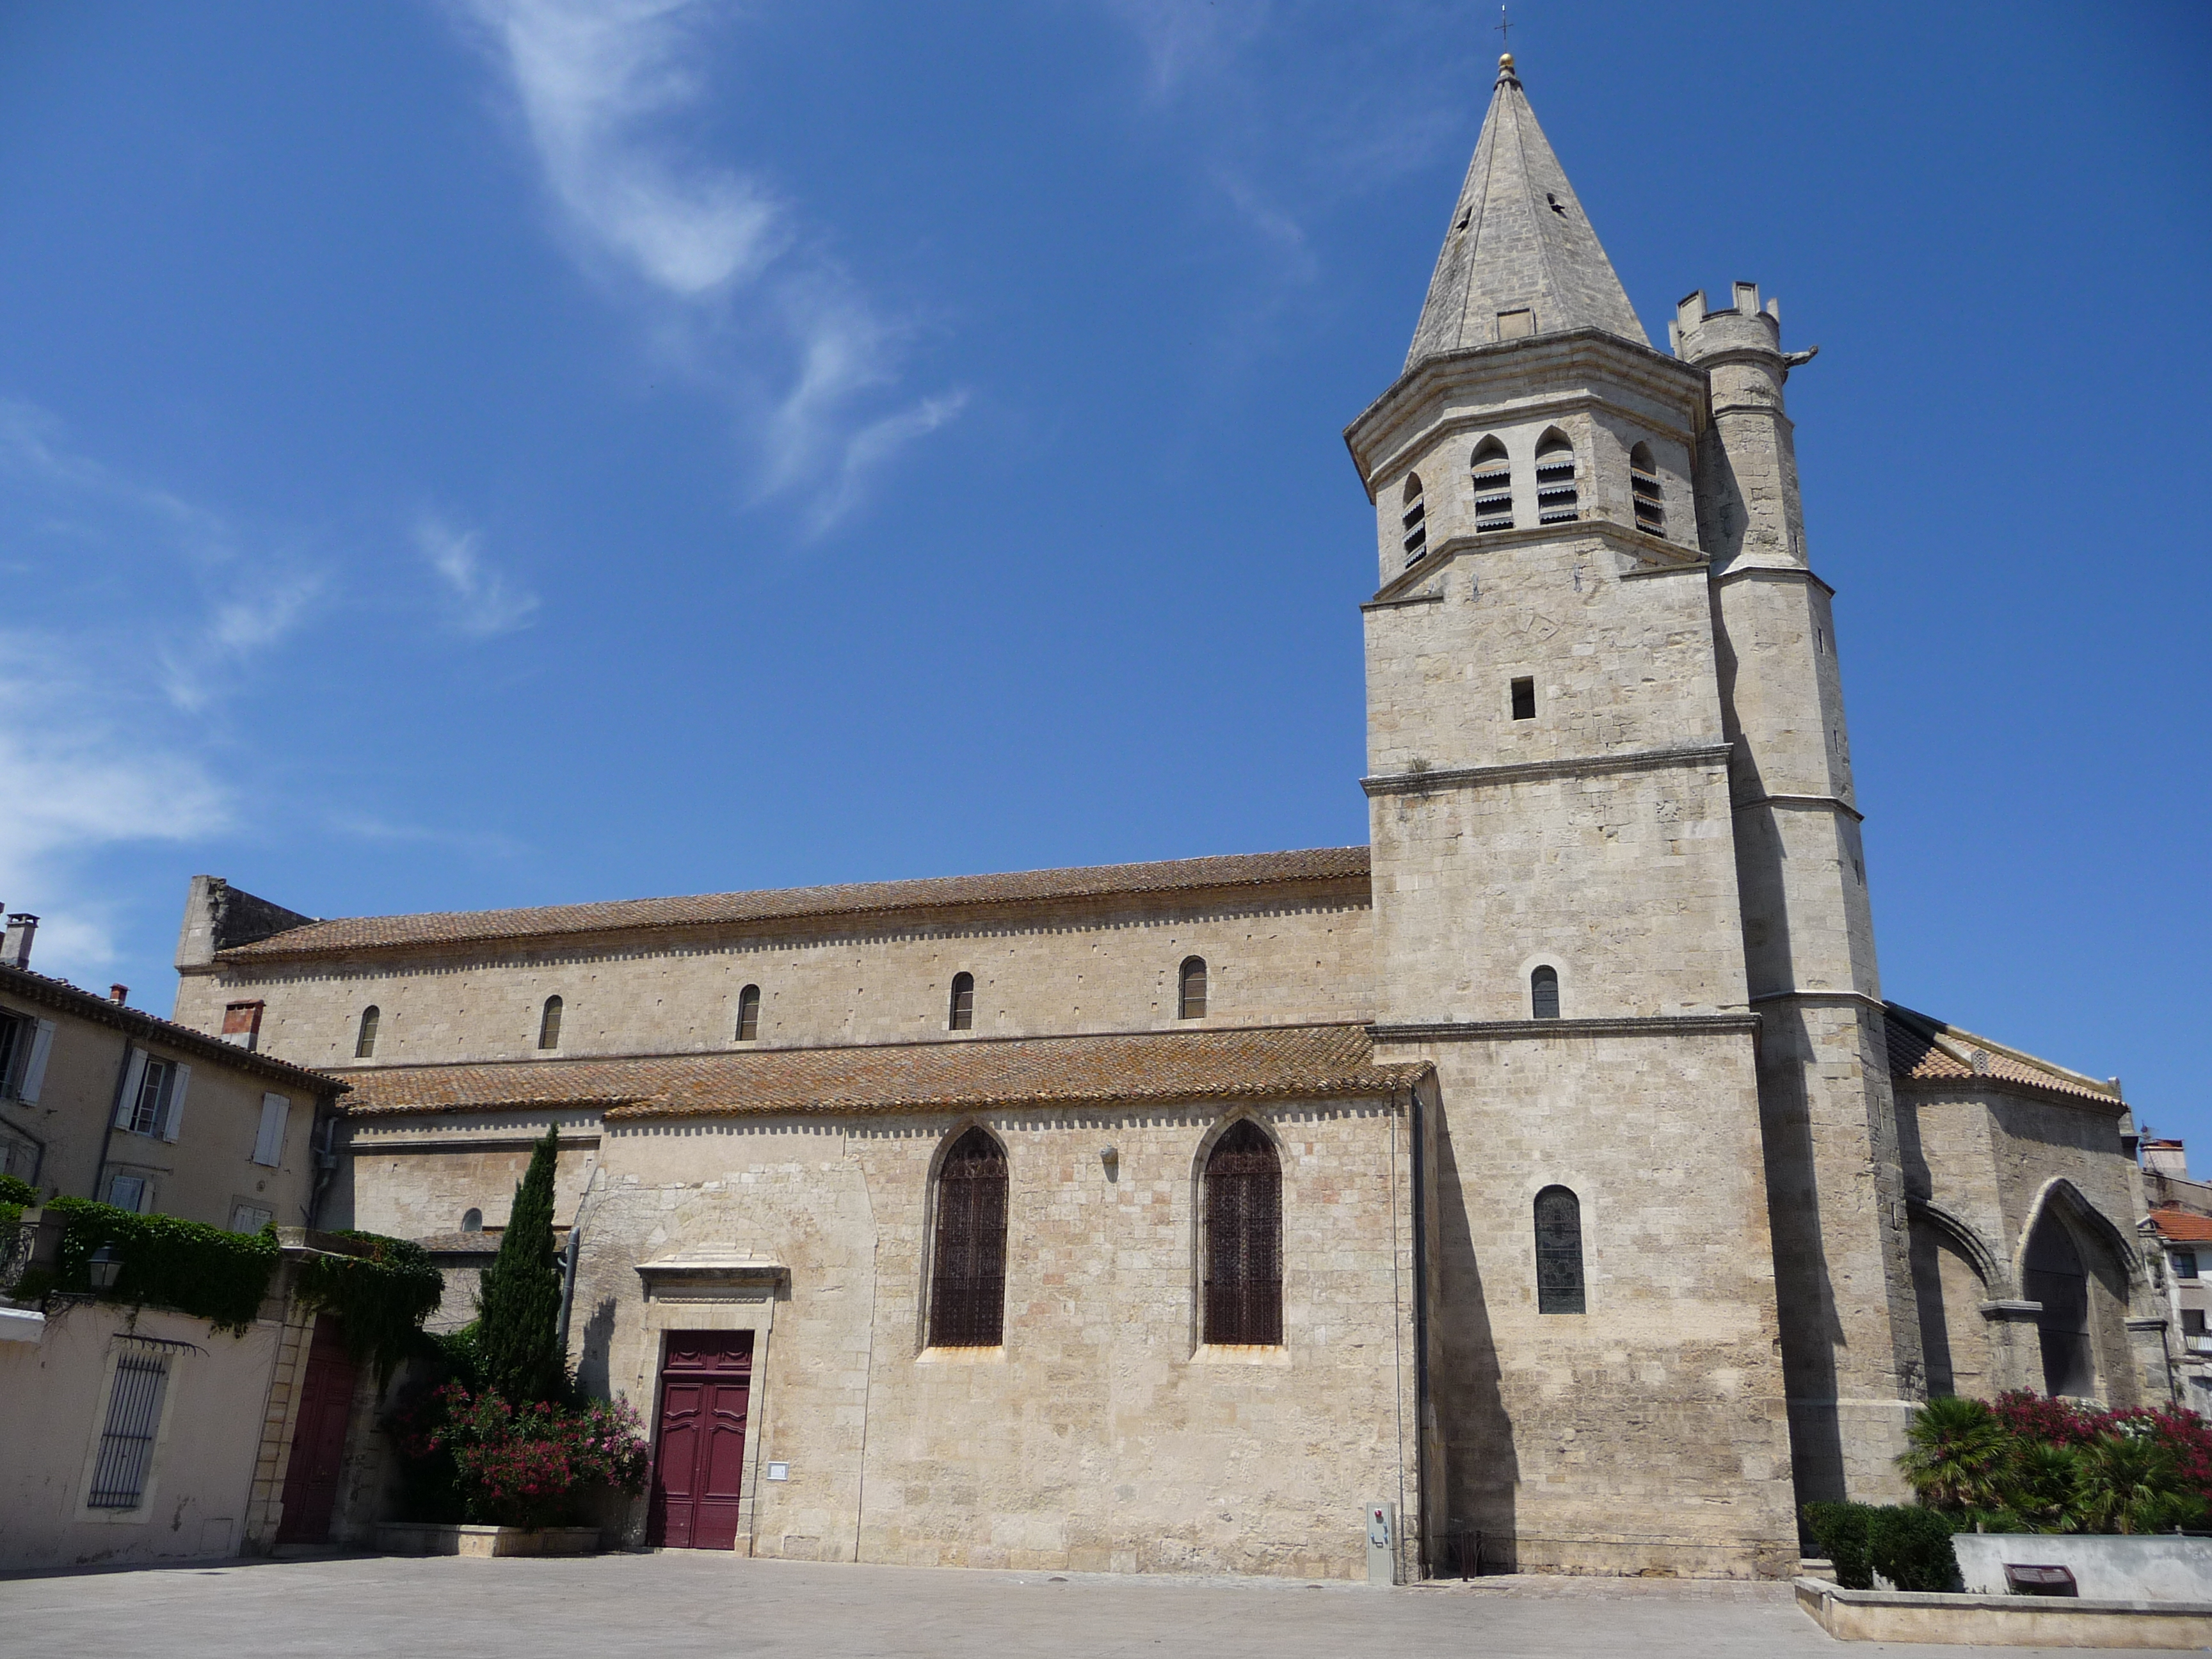 A béziersi Mária Magdolna-templom, ahol hétezer embert mészároltak le a keresztesek